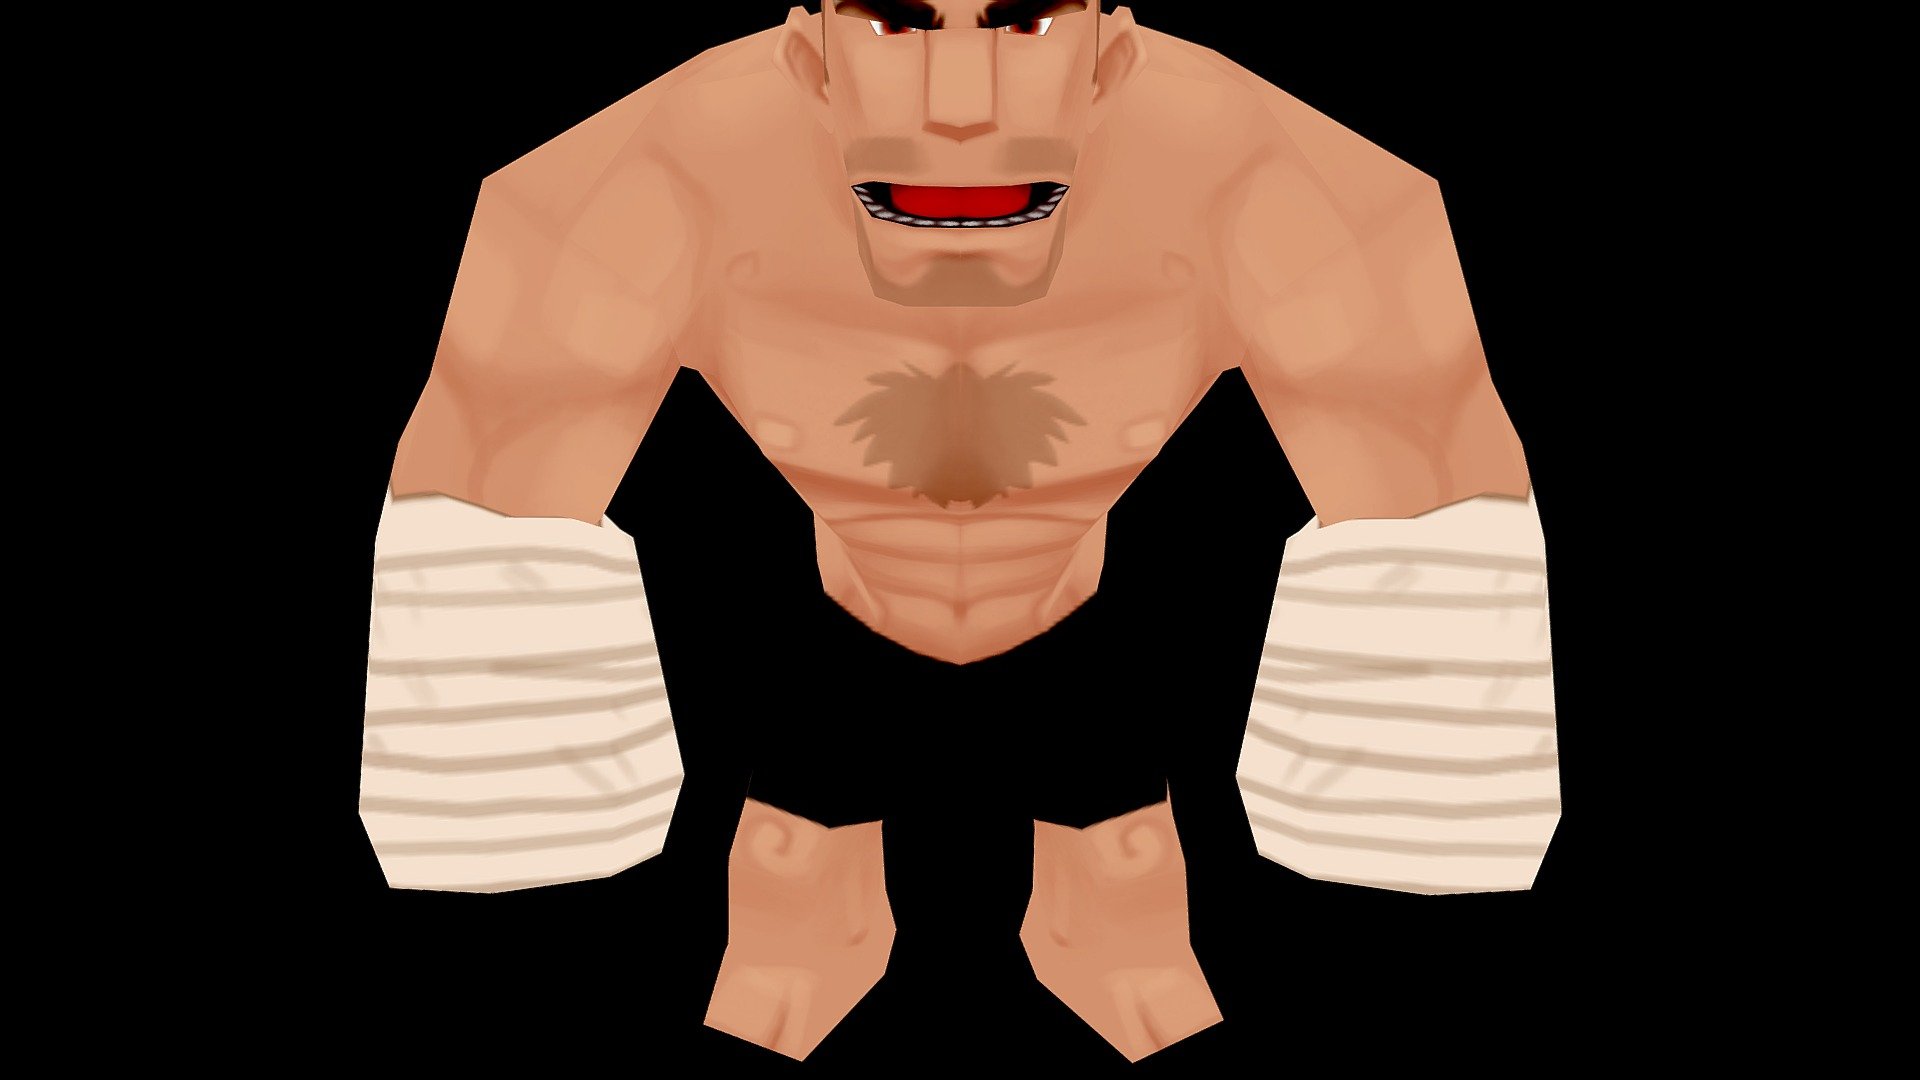 Brute Guy - 3D model by hugovaz 3d model